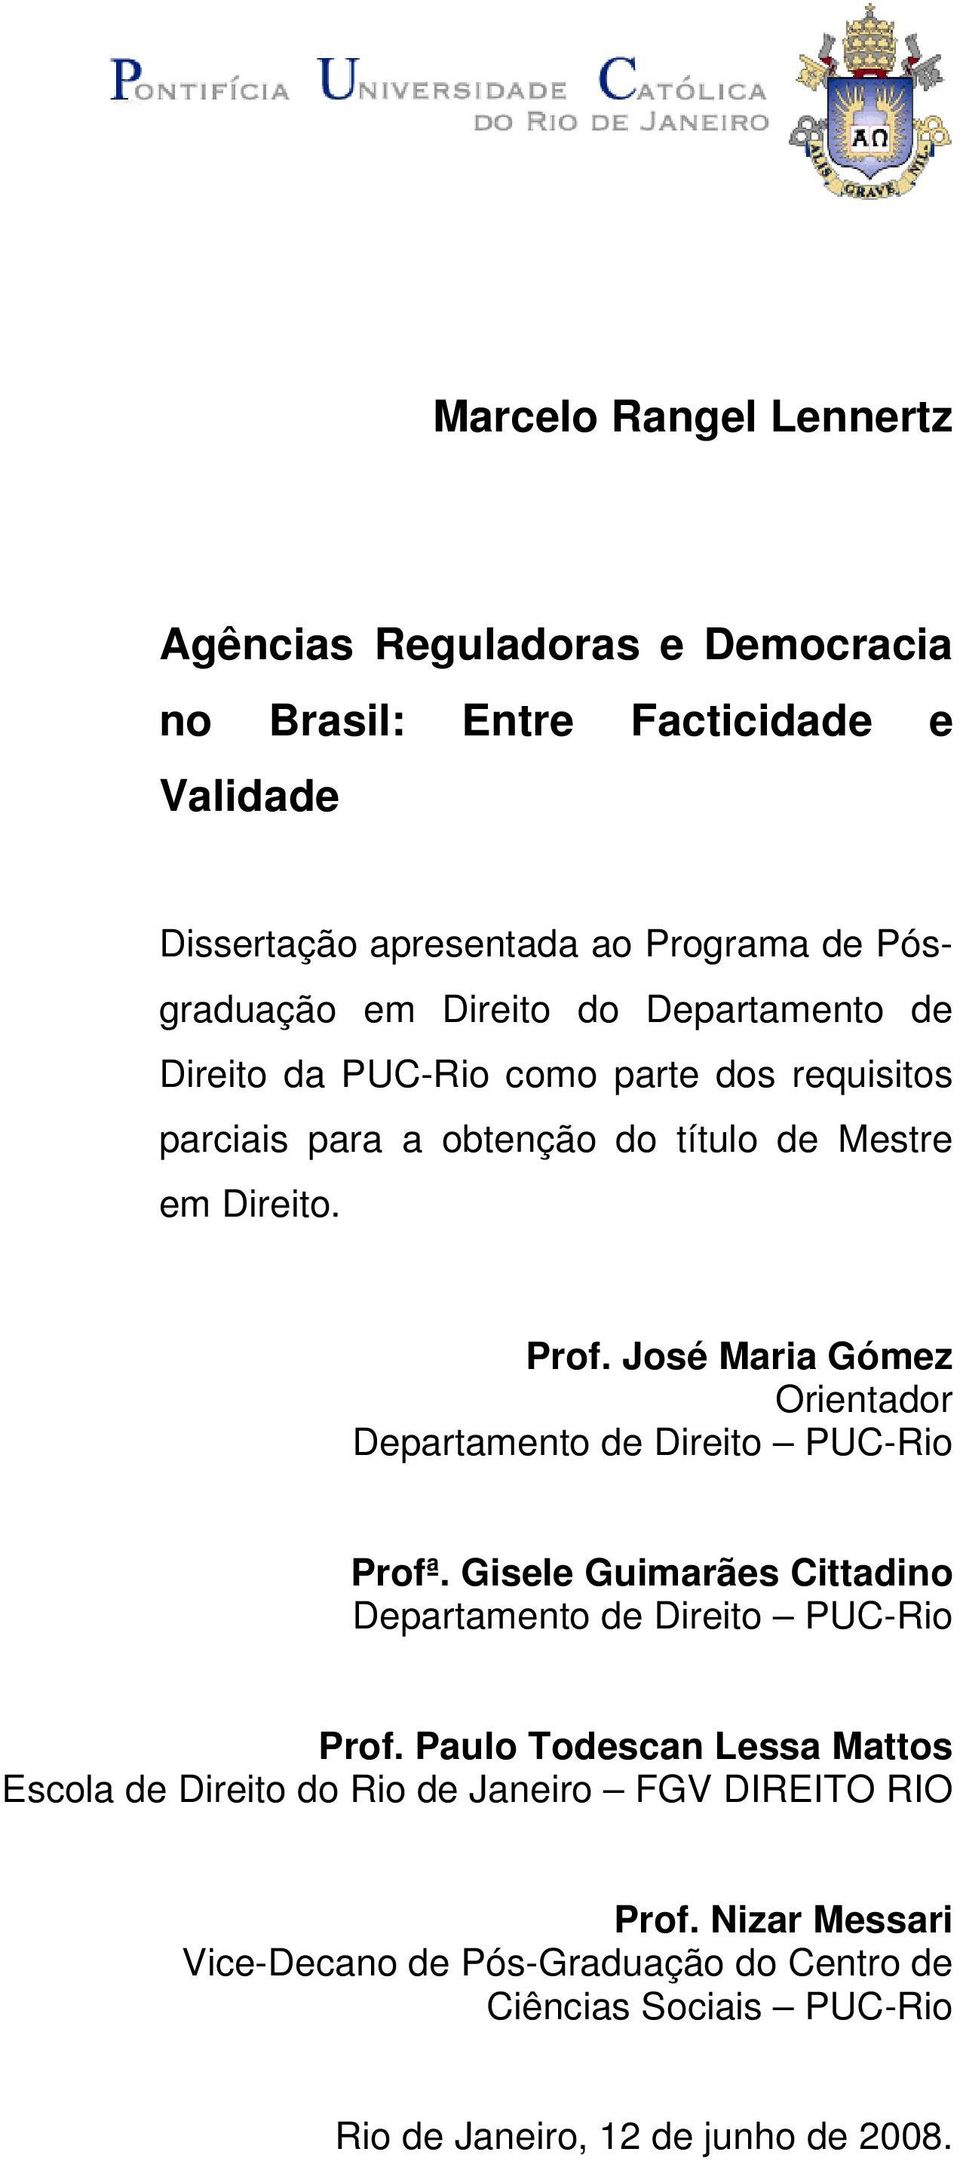 José Maria Gómez Orientador Departamento de Direito PUC-Rio Profª. Gisele Guimarães Cittadino Departamento de Direito PUC-Rio Prof.